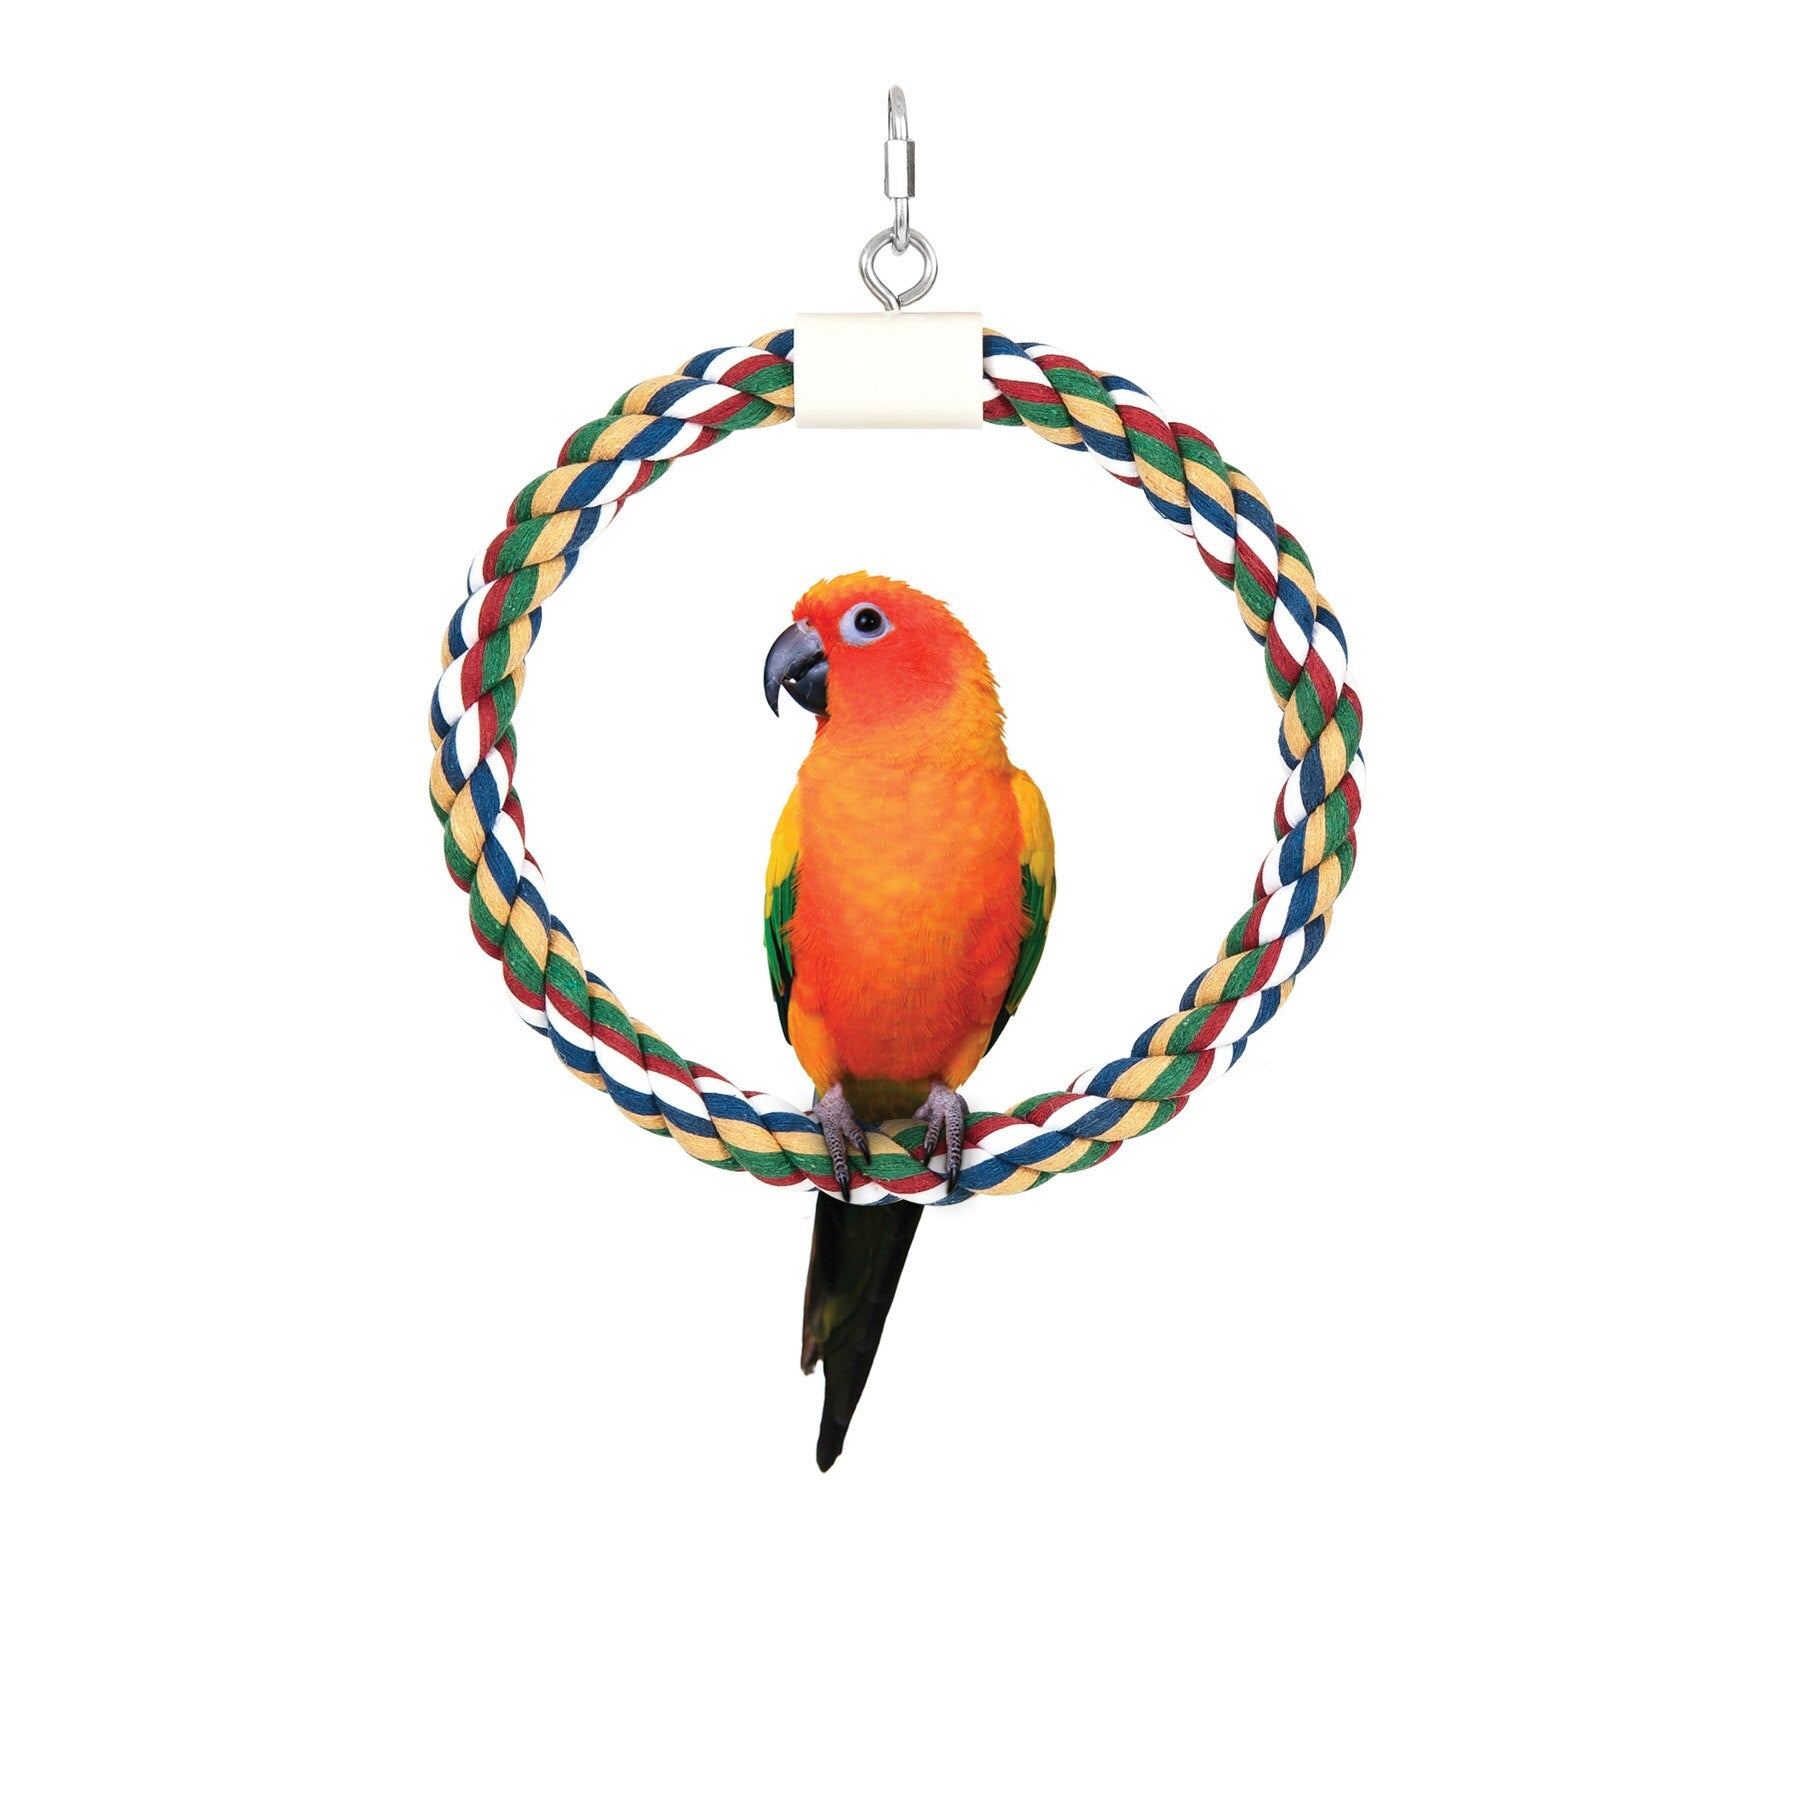 JW Swing N' Perch Bird Toy